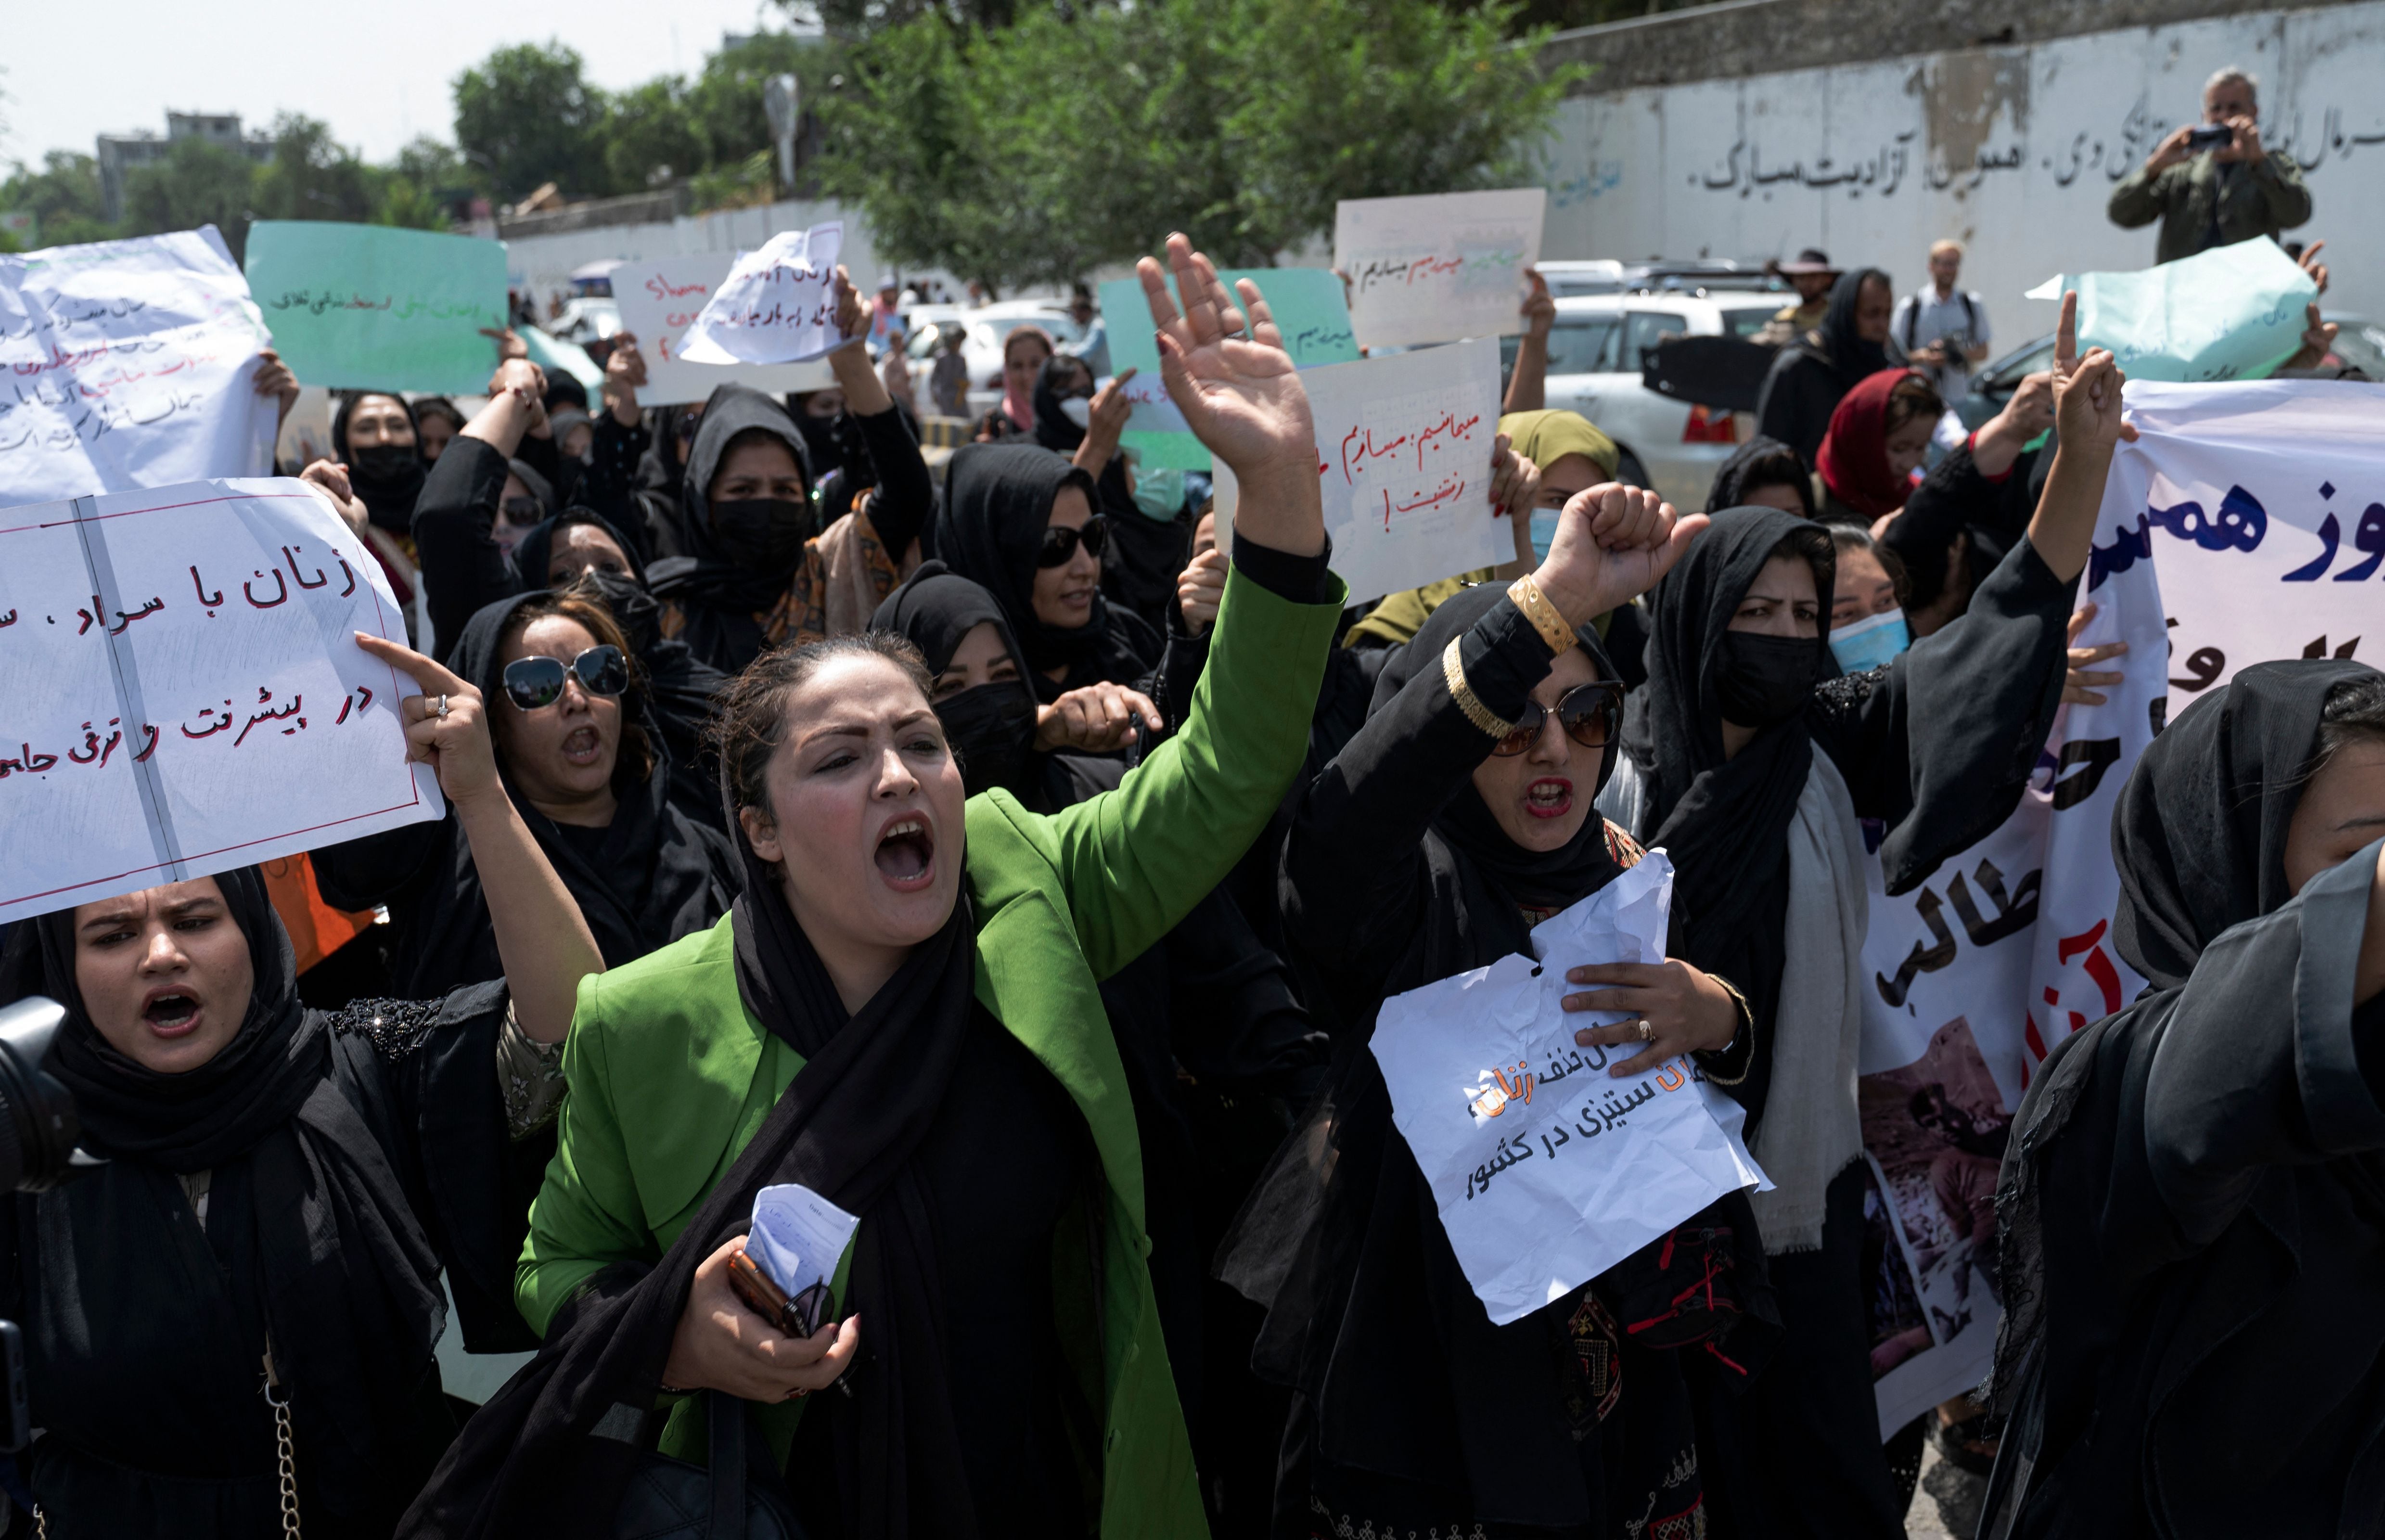 El 24 de diciembre, los talibanes, que desde su regreso al poder en agosto de 2021 impusieron severas restricciones a las mujeres